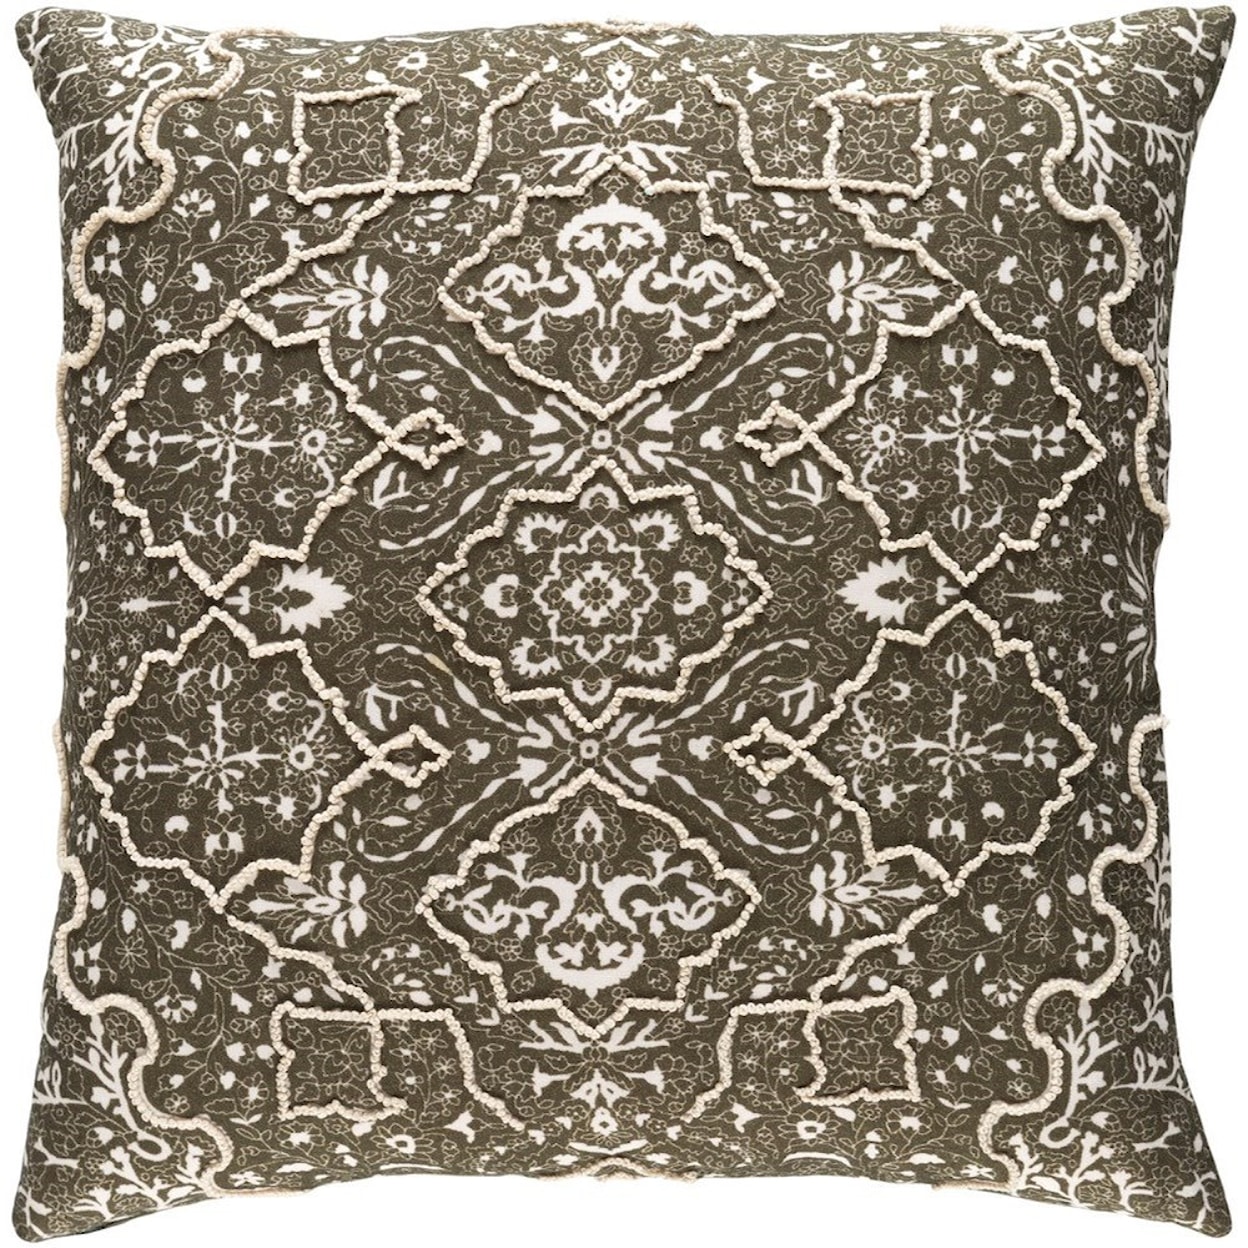 Surya Batik 22 x 22 x 5 Polyester Pillow Kit